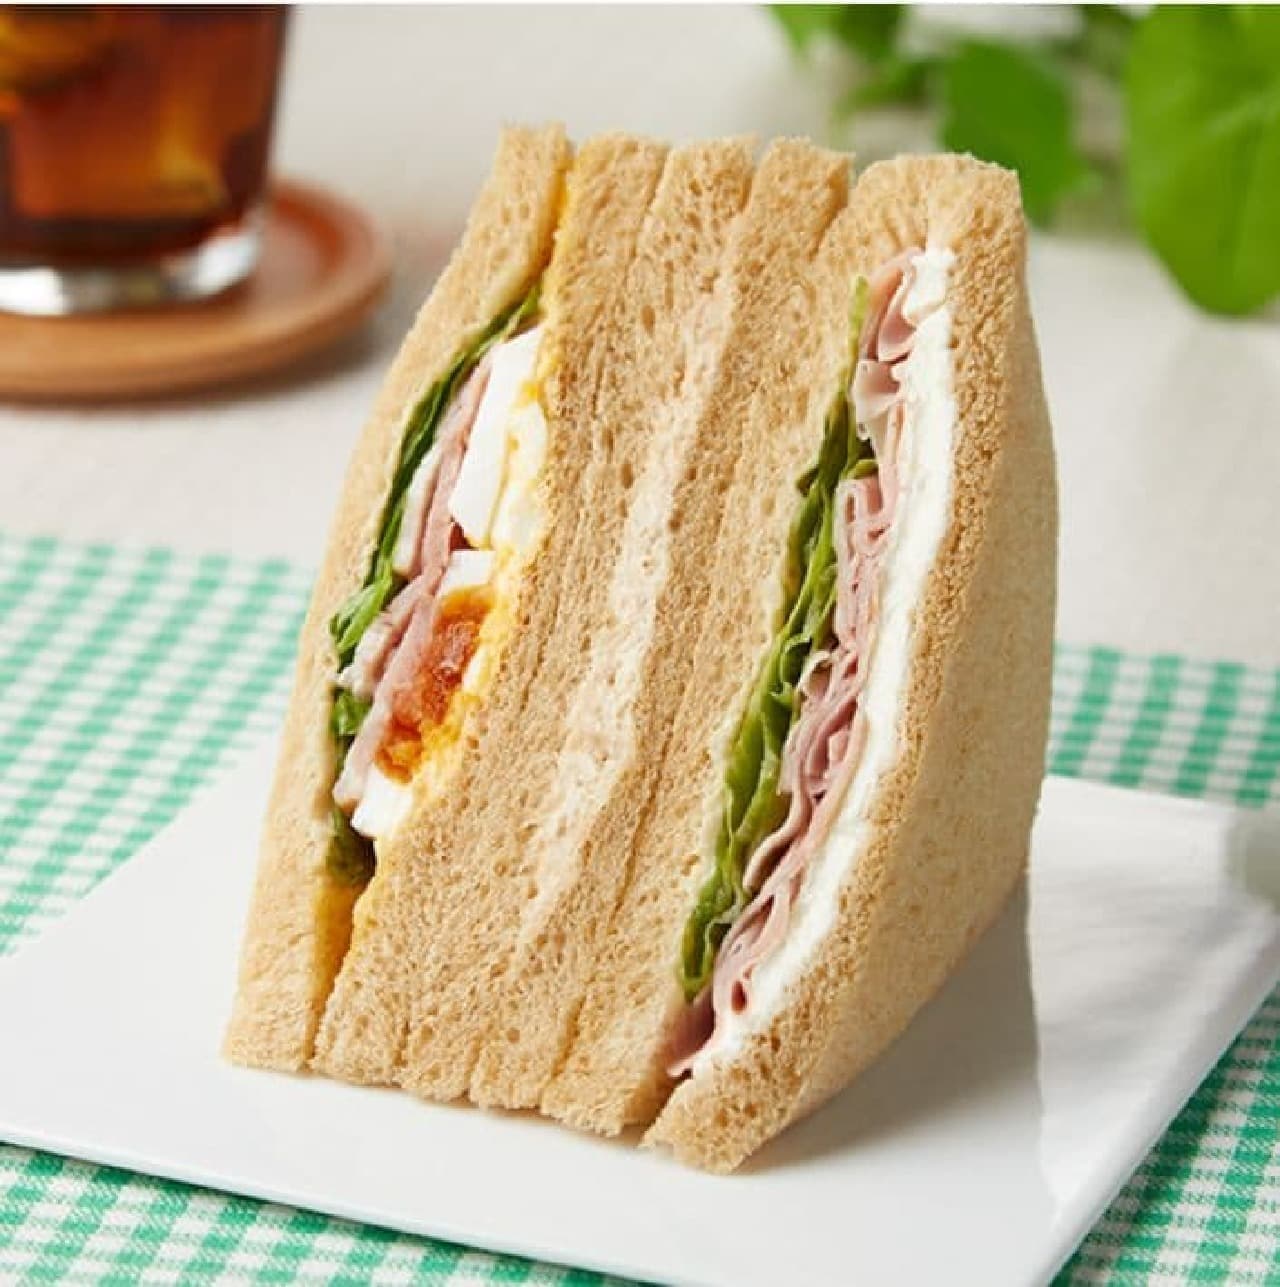 FamilyMart "Whole Grain Sandwich Mixed Sandwich"